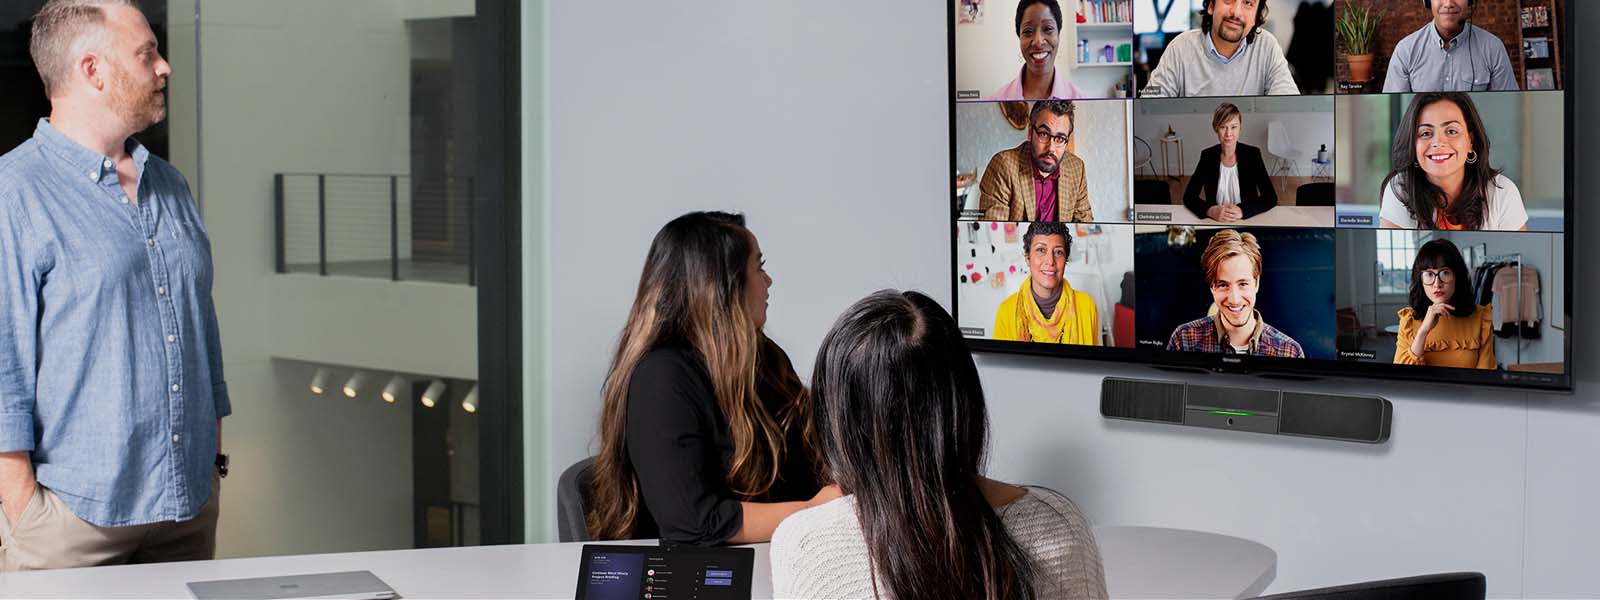 Tre persone che partecipano a una videoconferenza in una sala riunioni